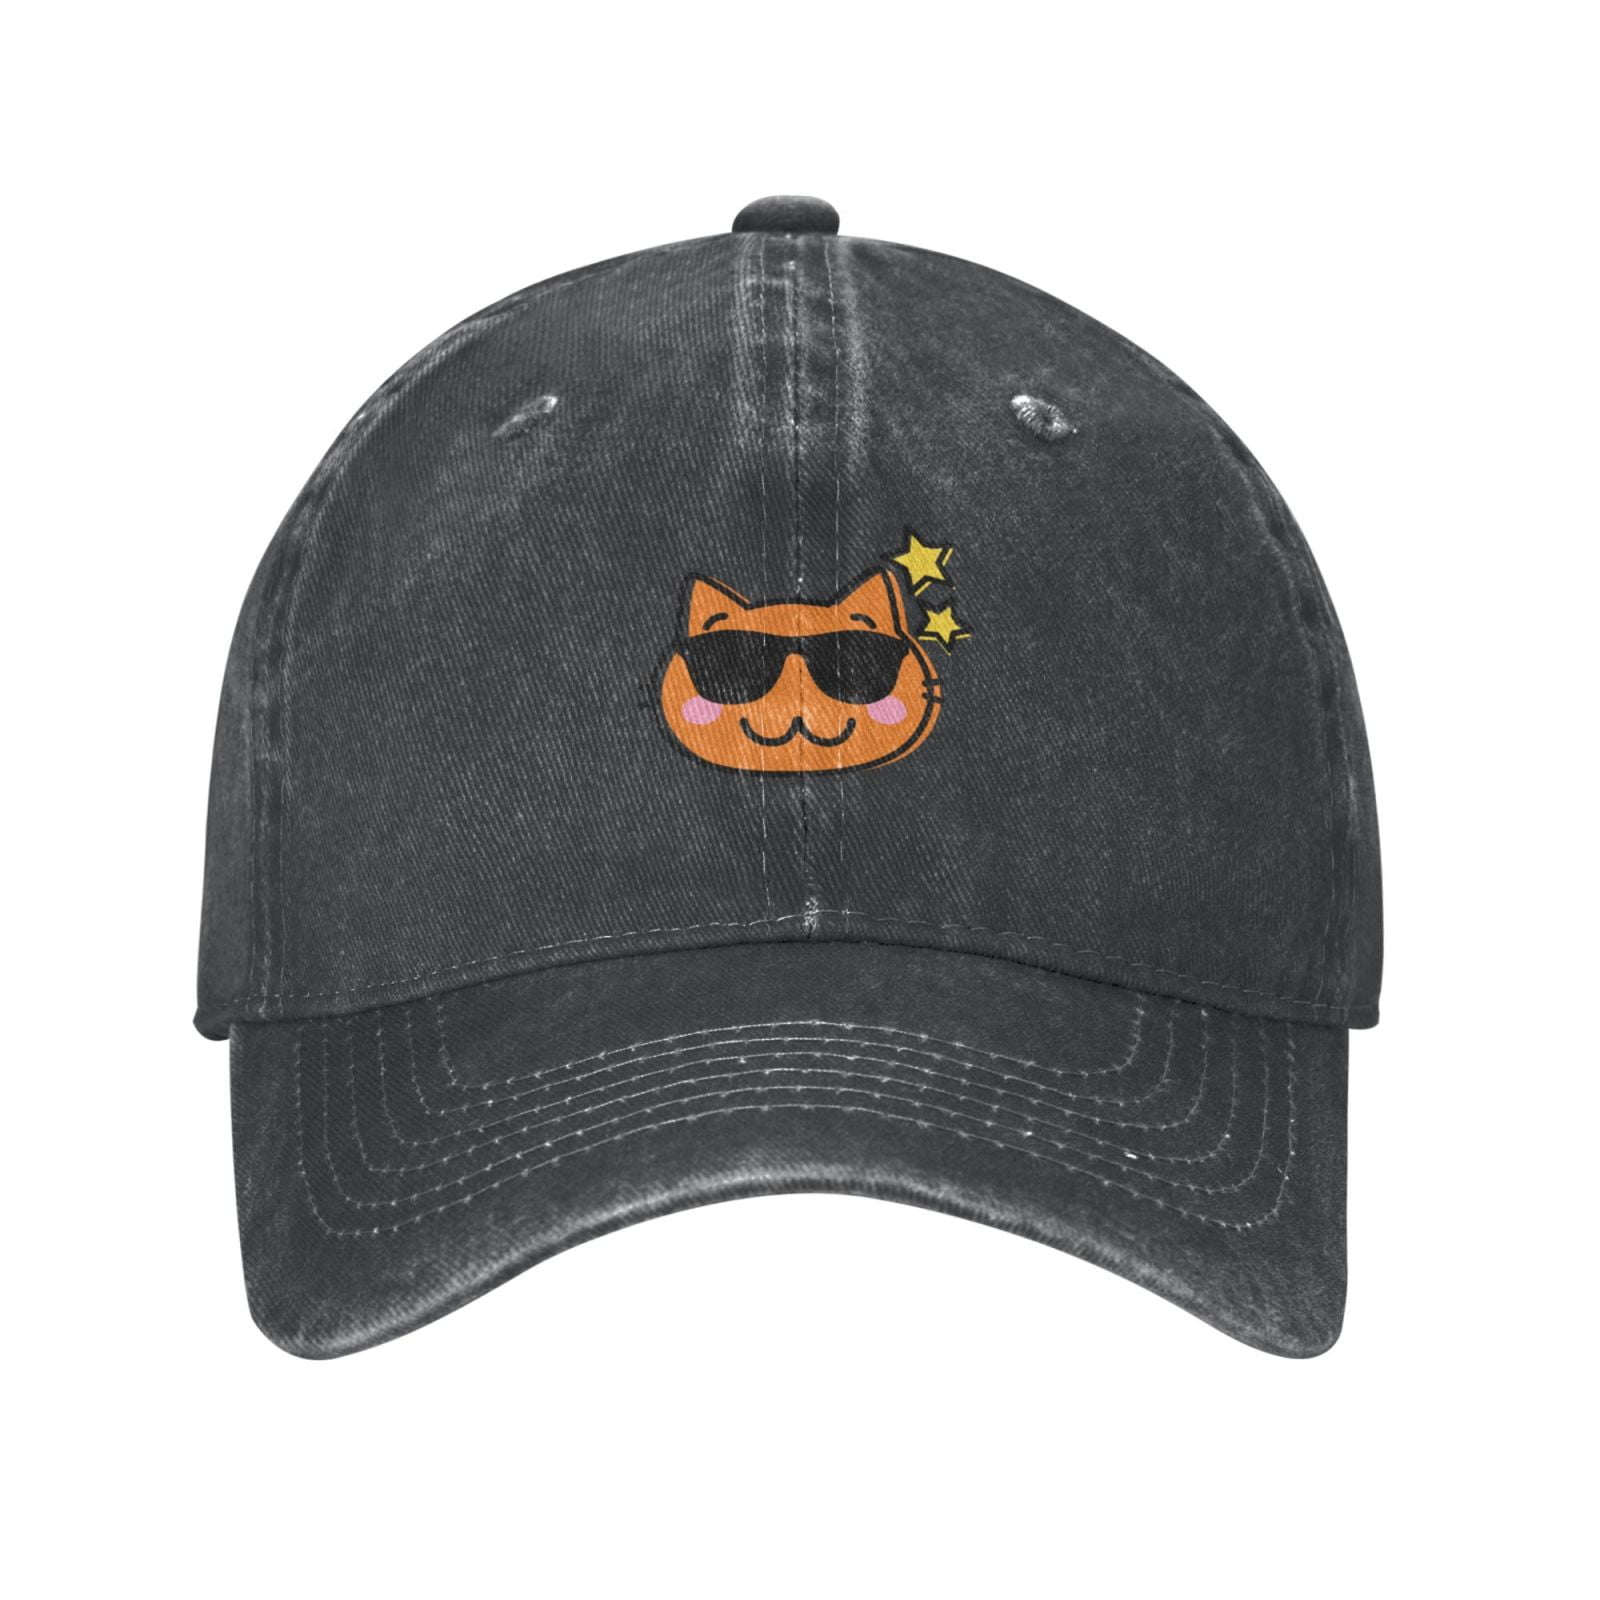 Mens Baseball Cap, Outdoor Sports Cap Cowboy Heather Casual Brim Cat- Happy Curved Classic Cartoon Adjustable Hat Hat, - Deep